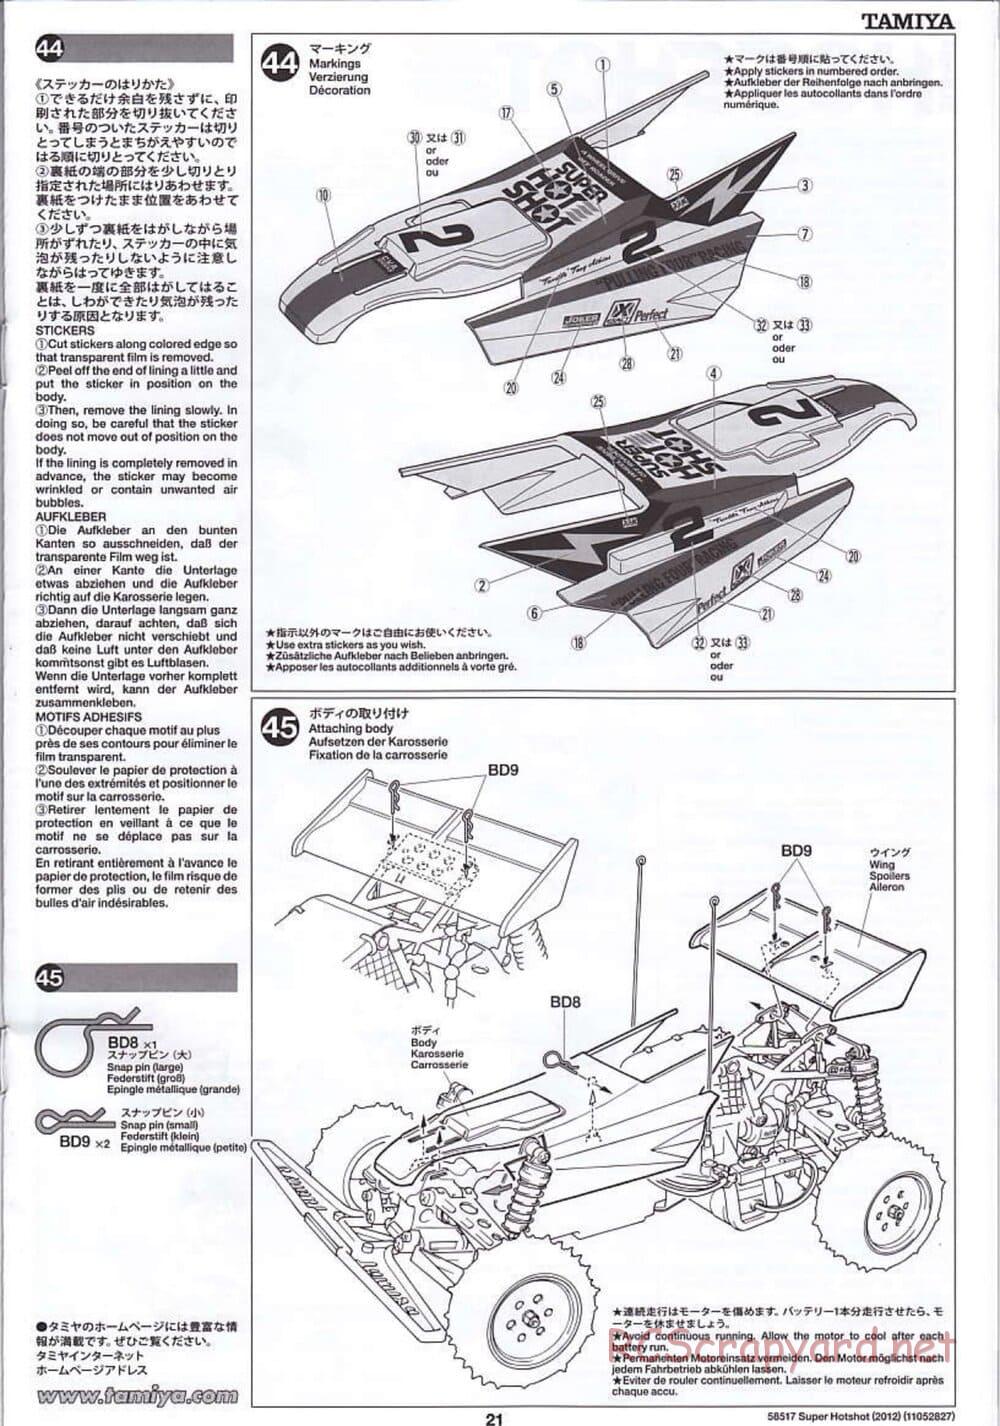 Tamiya - Super Hotshot 2012 - HS Chassis - Manual - Page 21